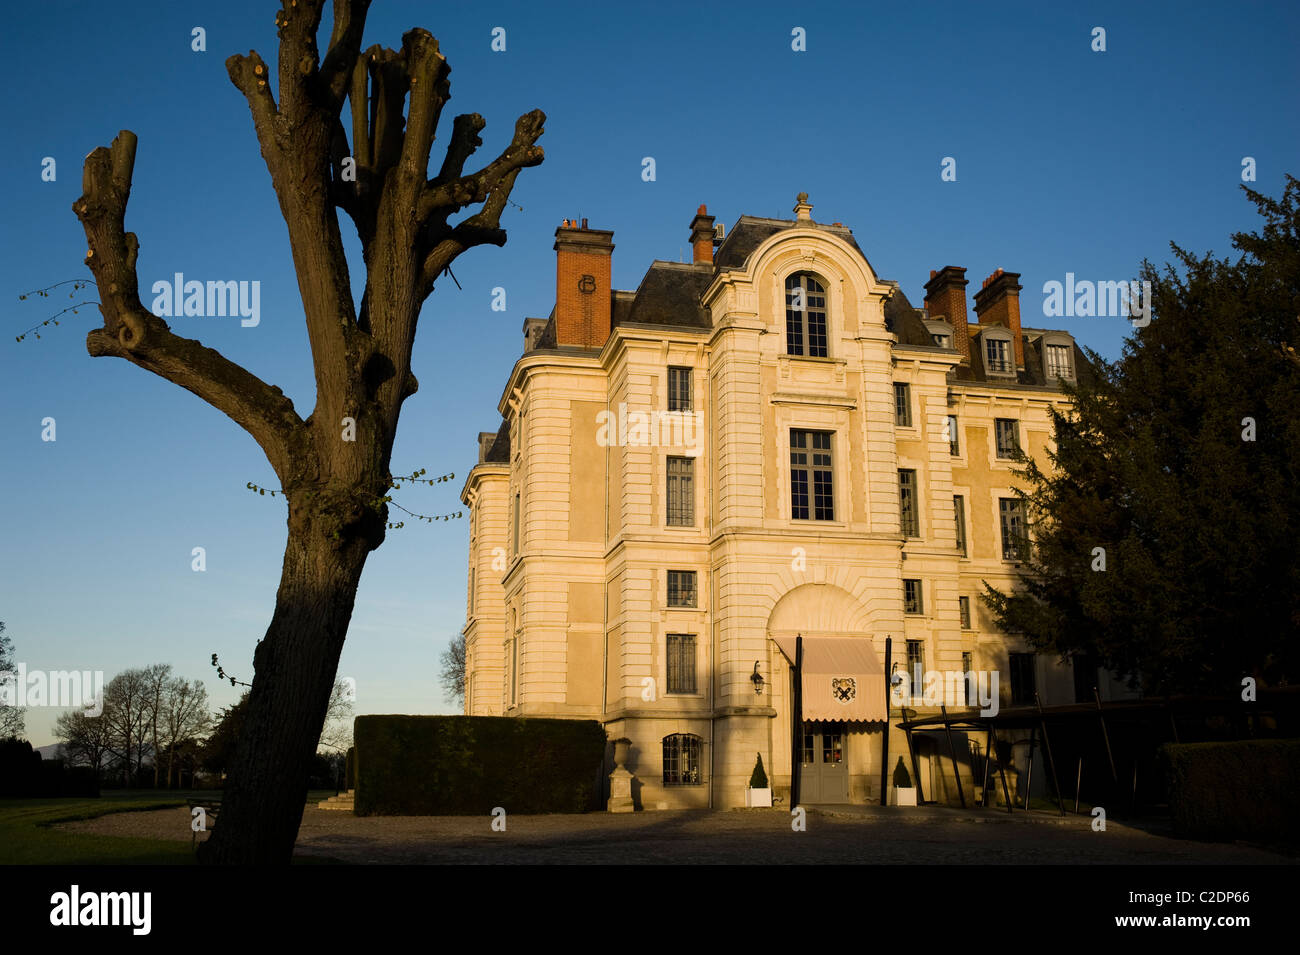 Chateau de la Caniere, Thuret. Auvergne region, France. hotel castle auvernia francia Stock Photo